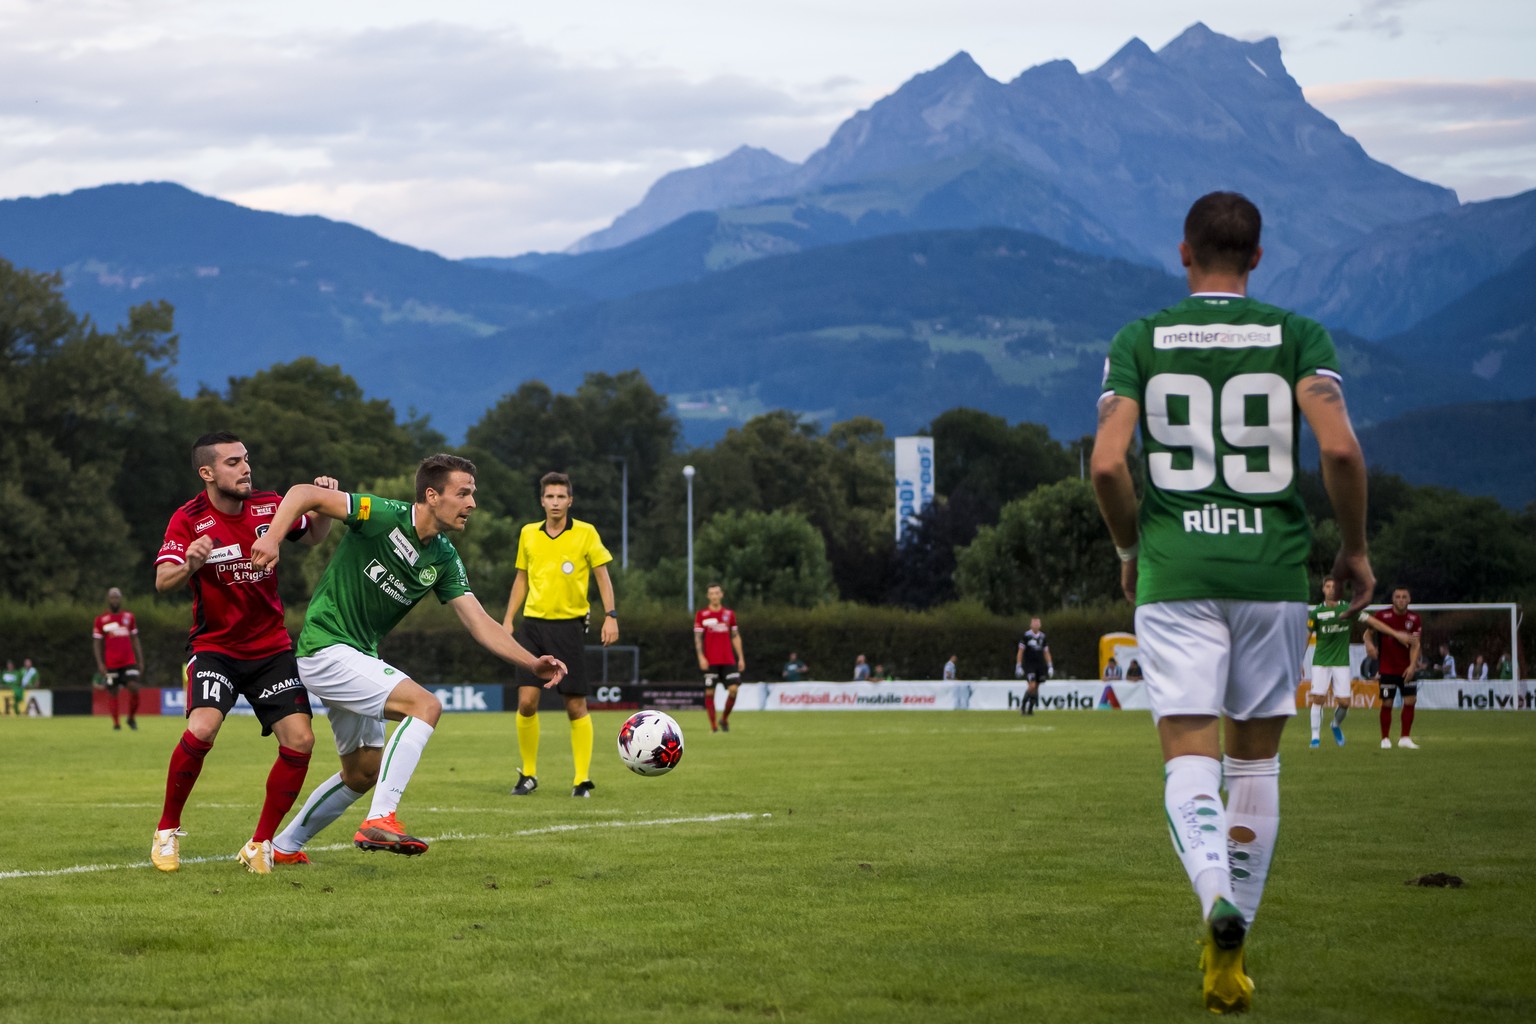 Le joueur valaisan Emin Aslan, gauche, lutte pour le ballon avec le joueur st-gallois Lukas Goertler, droite, lors de la rencontre de Coupe de Suisse entre Le FC Monthey et FC St. Gallen le samedi 17  ...